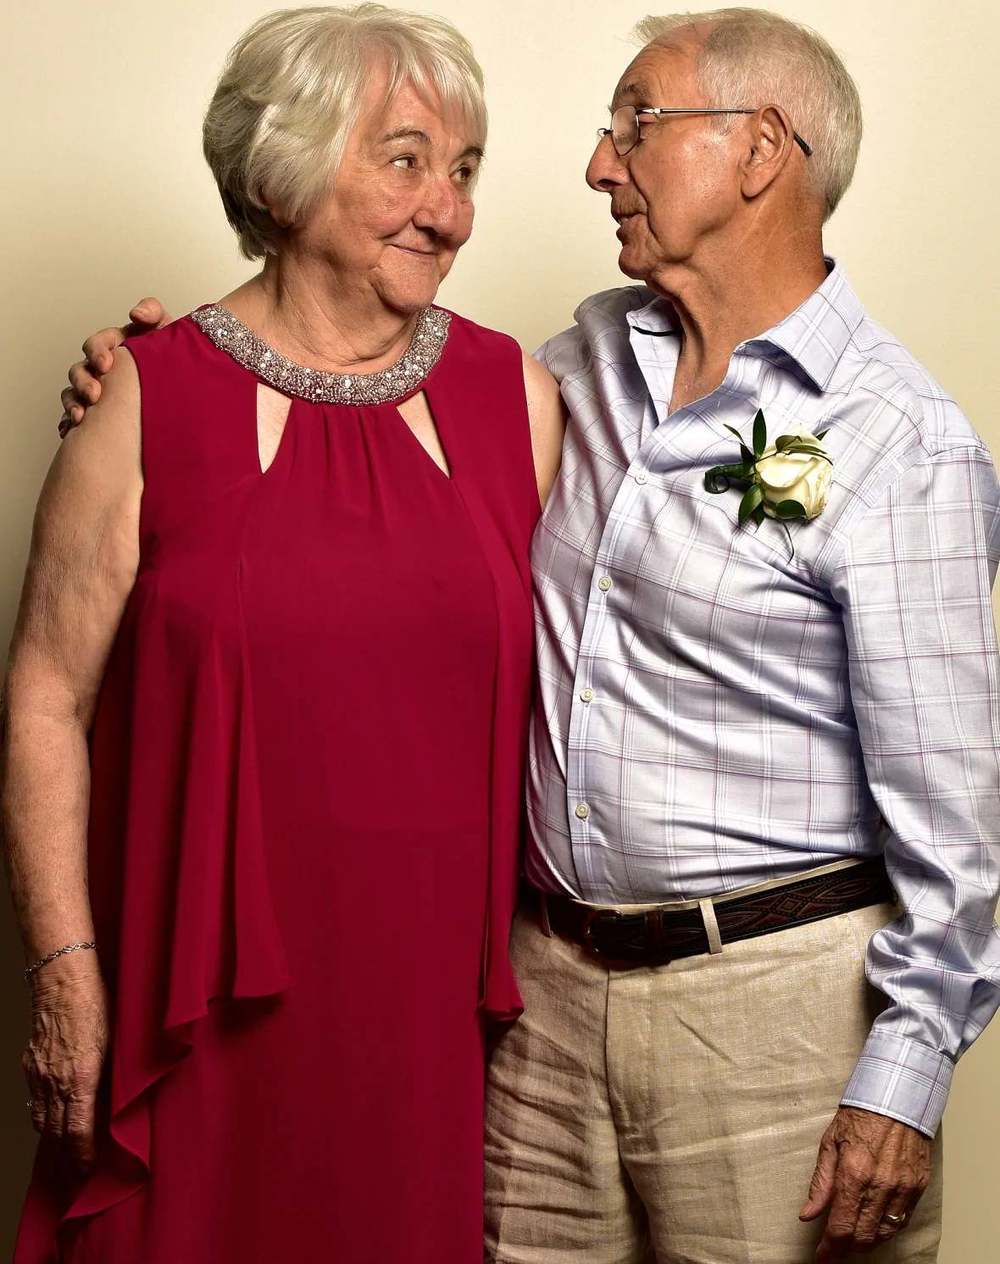  
Ông Fred và bà Florence kết hôn ở tuổi 84. (Ảnh: CNN)